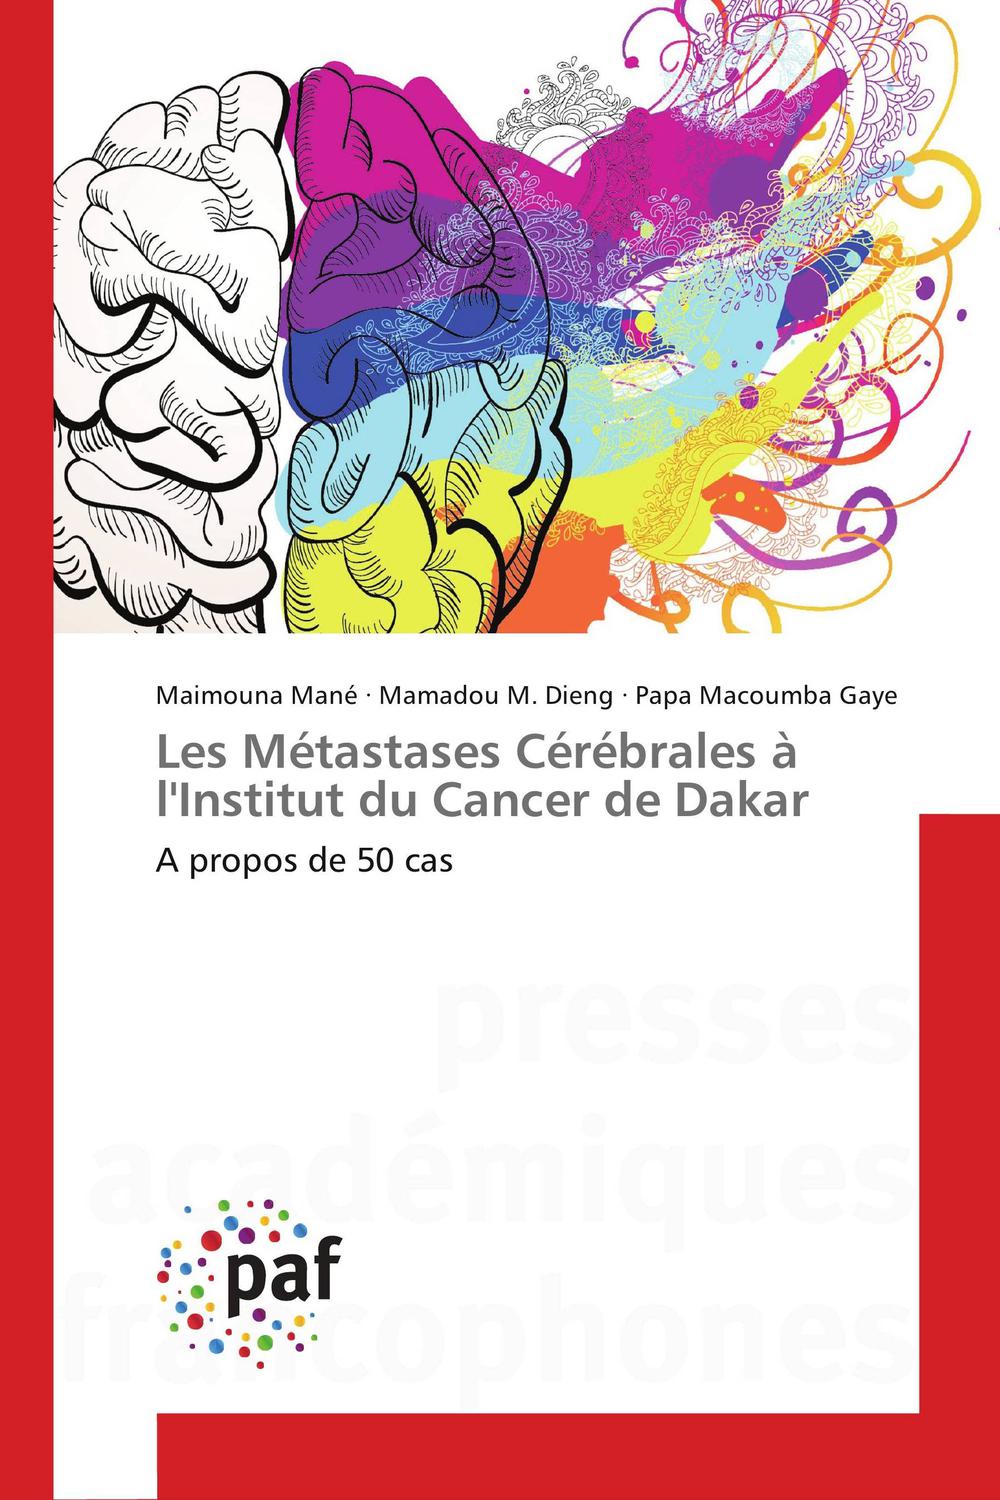 PDF] Les Métastases Cérébrales à l'Institut du Cancer de Dakar by ...